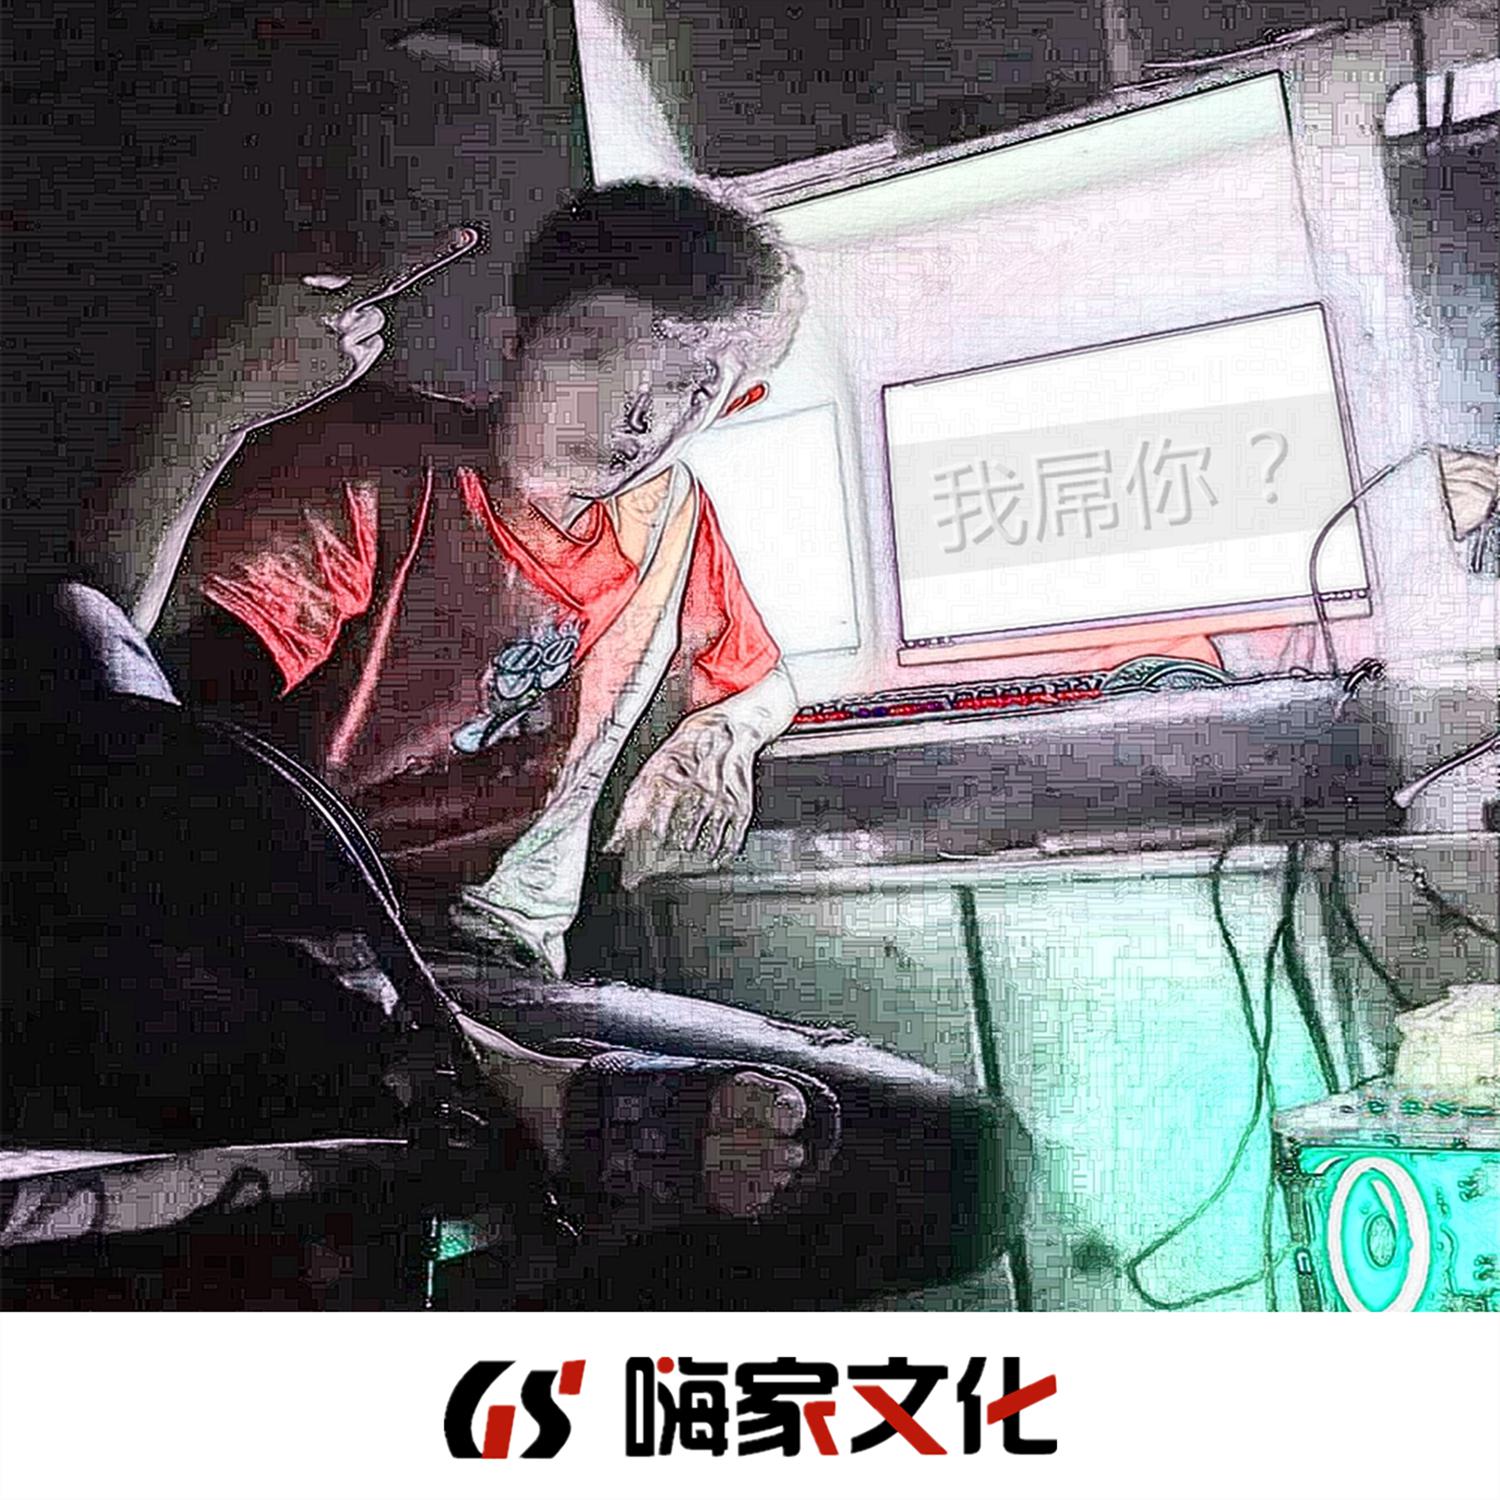 69 - 神话情话(DJ版)